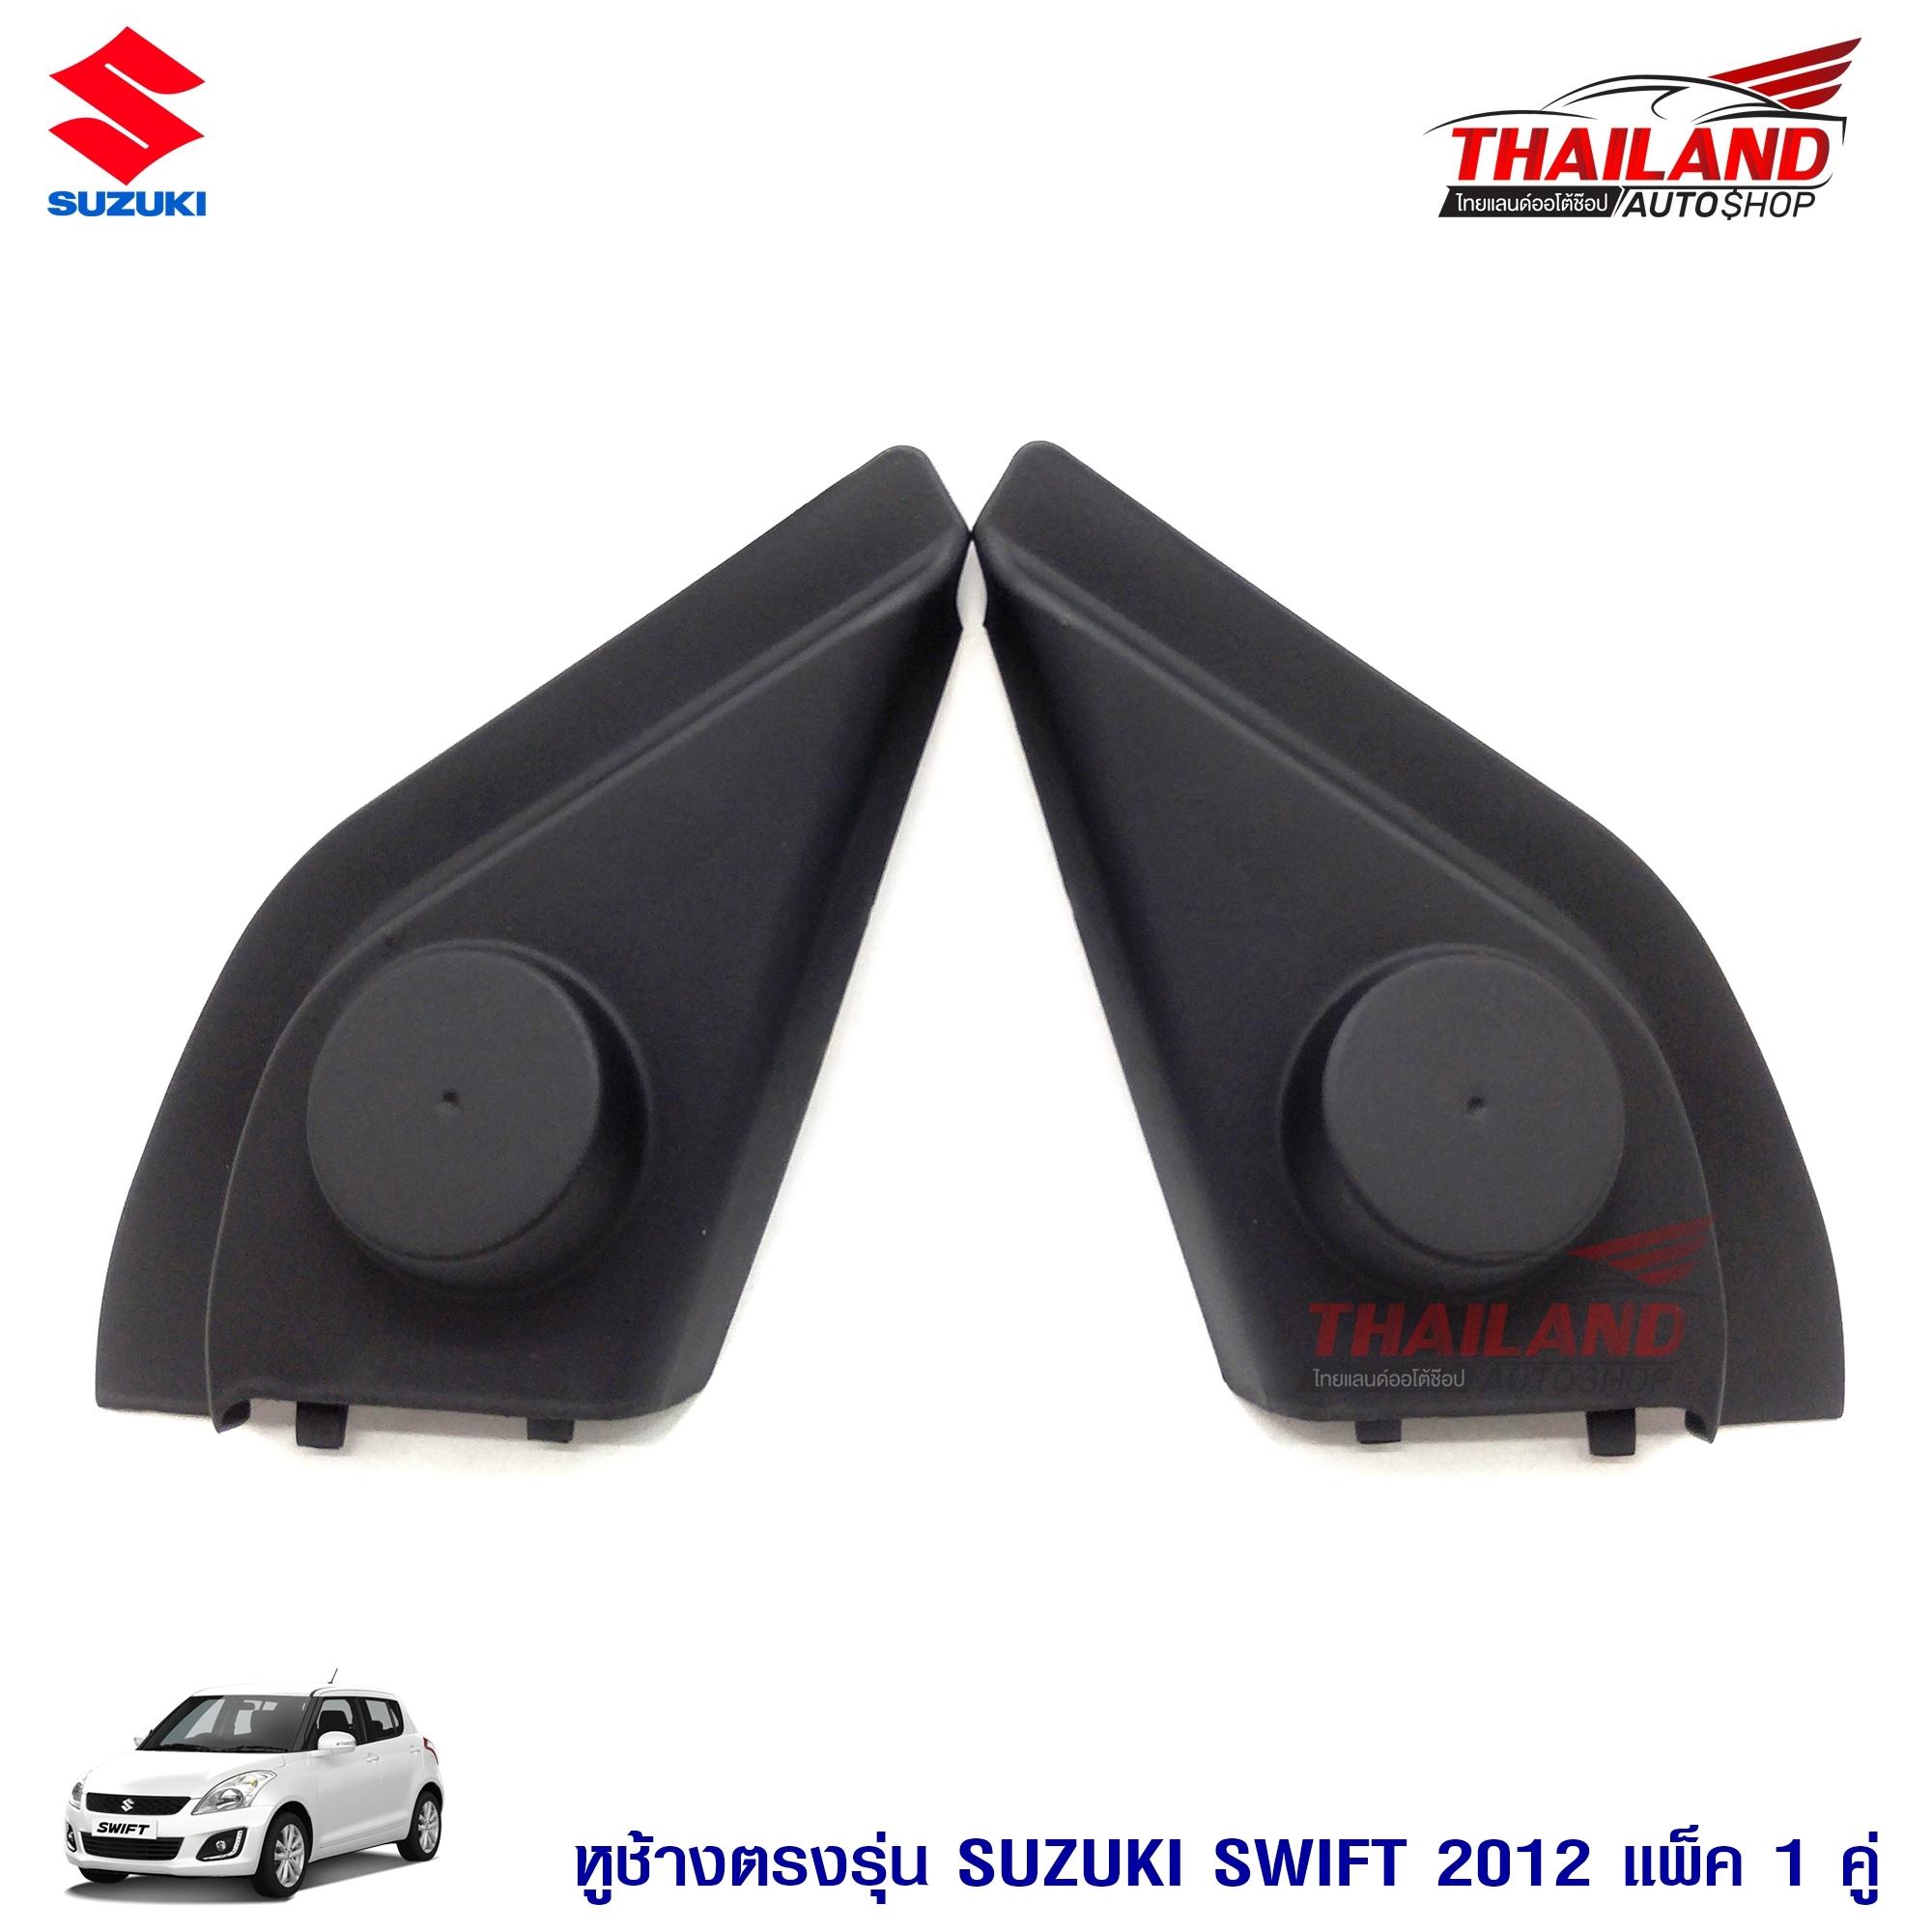 หูช้าง ตรงรุ่น สำหรับรถ Suzuki Swift 2012สีดำ แพ็ค 1 คู่